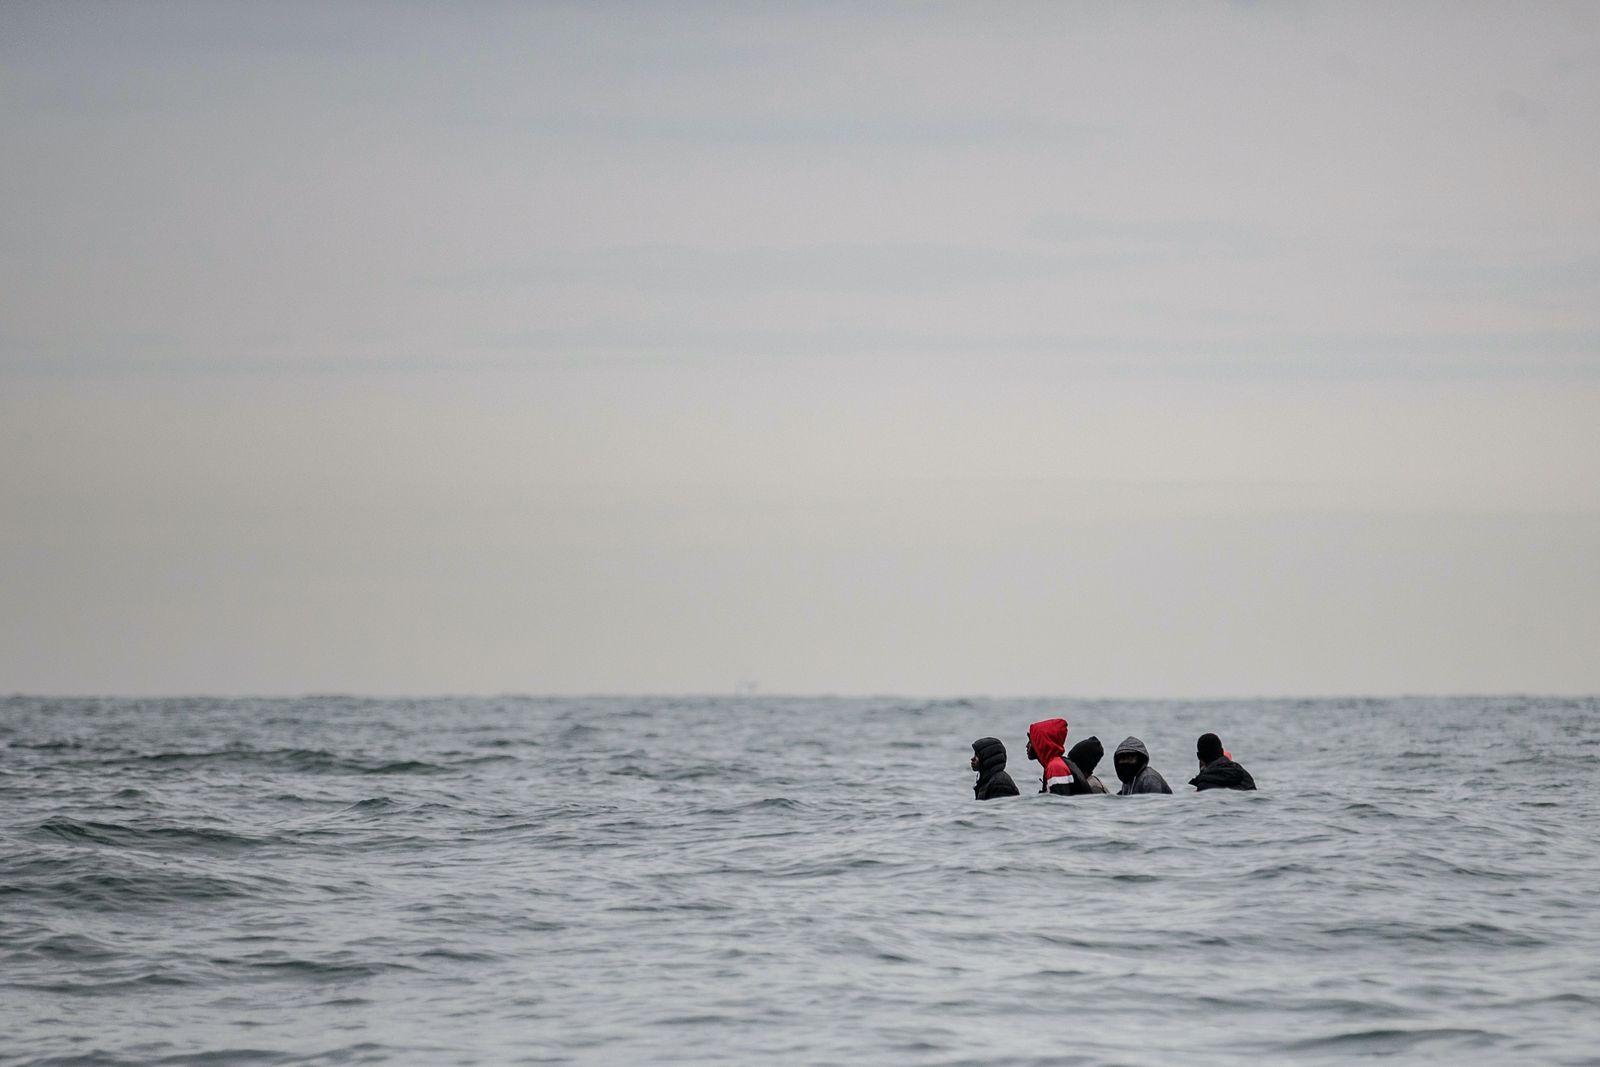 مهاجرون يحاولون عبور المانش باتجاه السواحل البريطانية 27 أغسطس 2020  - AFP